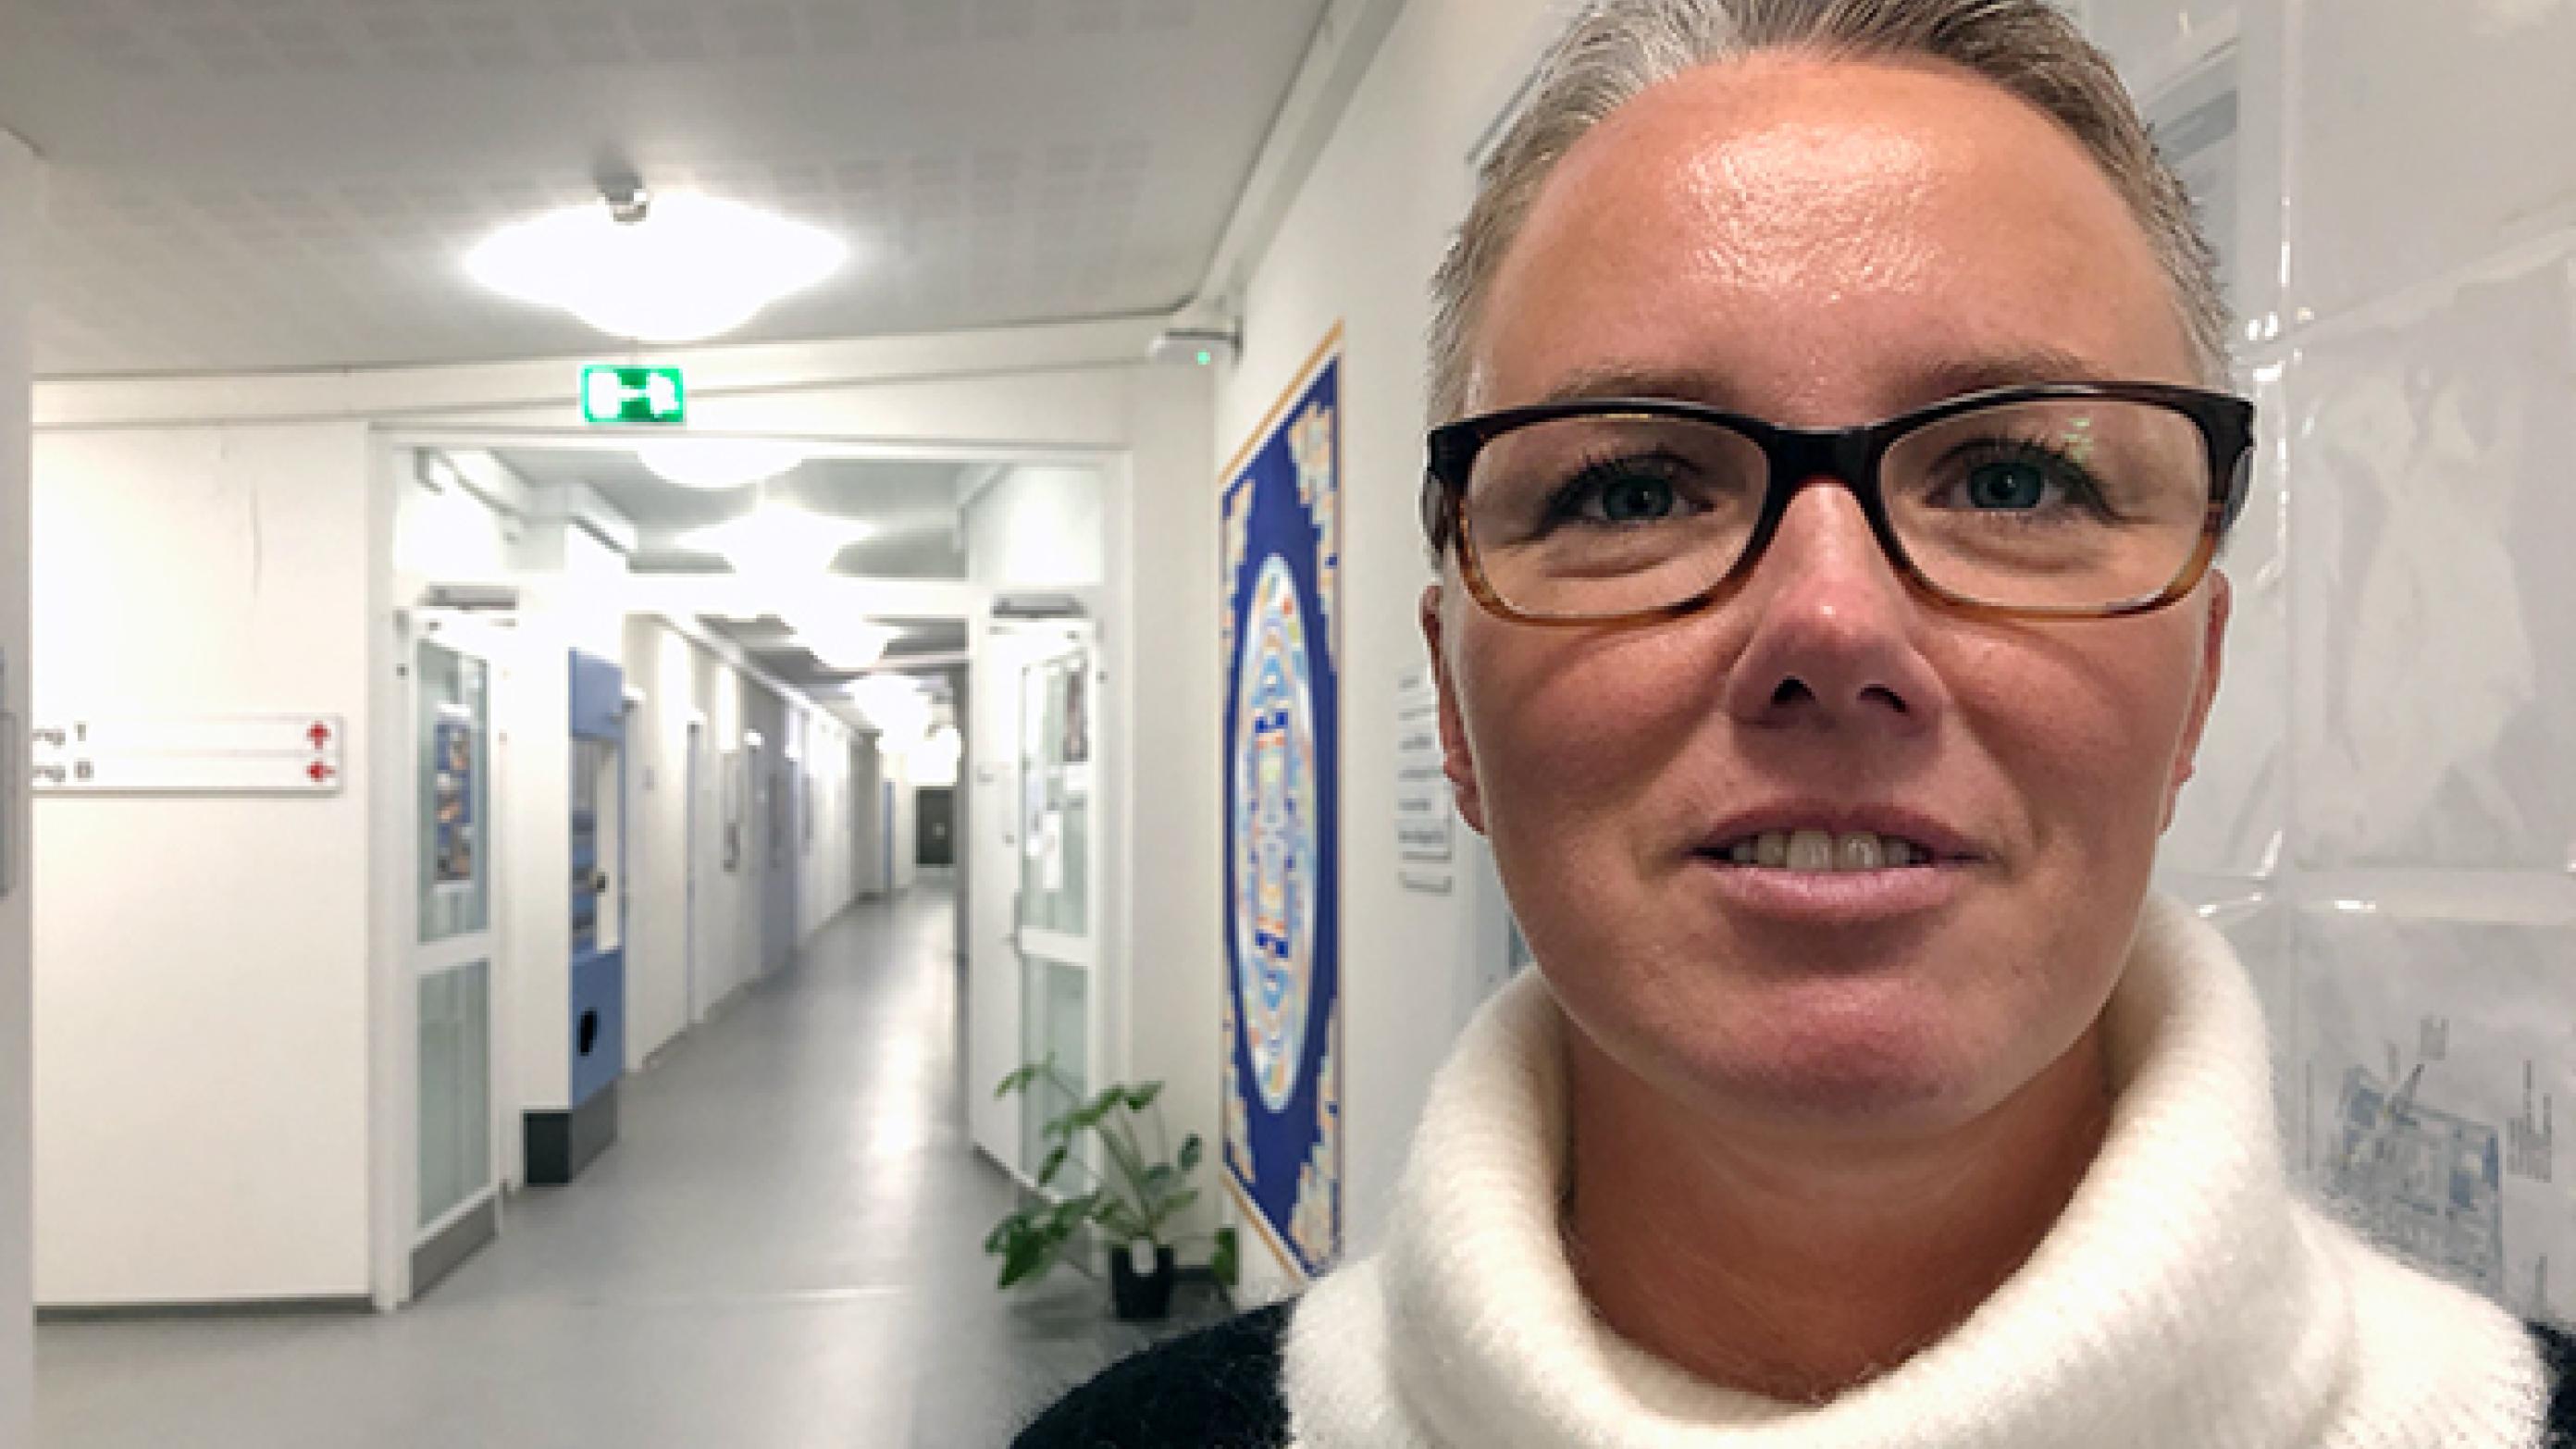 Overlæge i karkirurgi Lene Clausen tæller ned til den 1. marts, hvor hun forlader afdeling T på Odense Universitetshospital til fordel for en introstilling i almen medicin. Foto: Ugeskriftet.